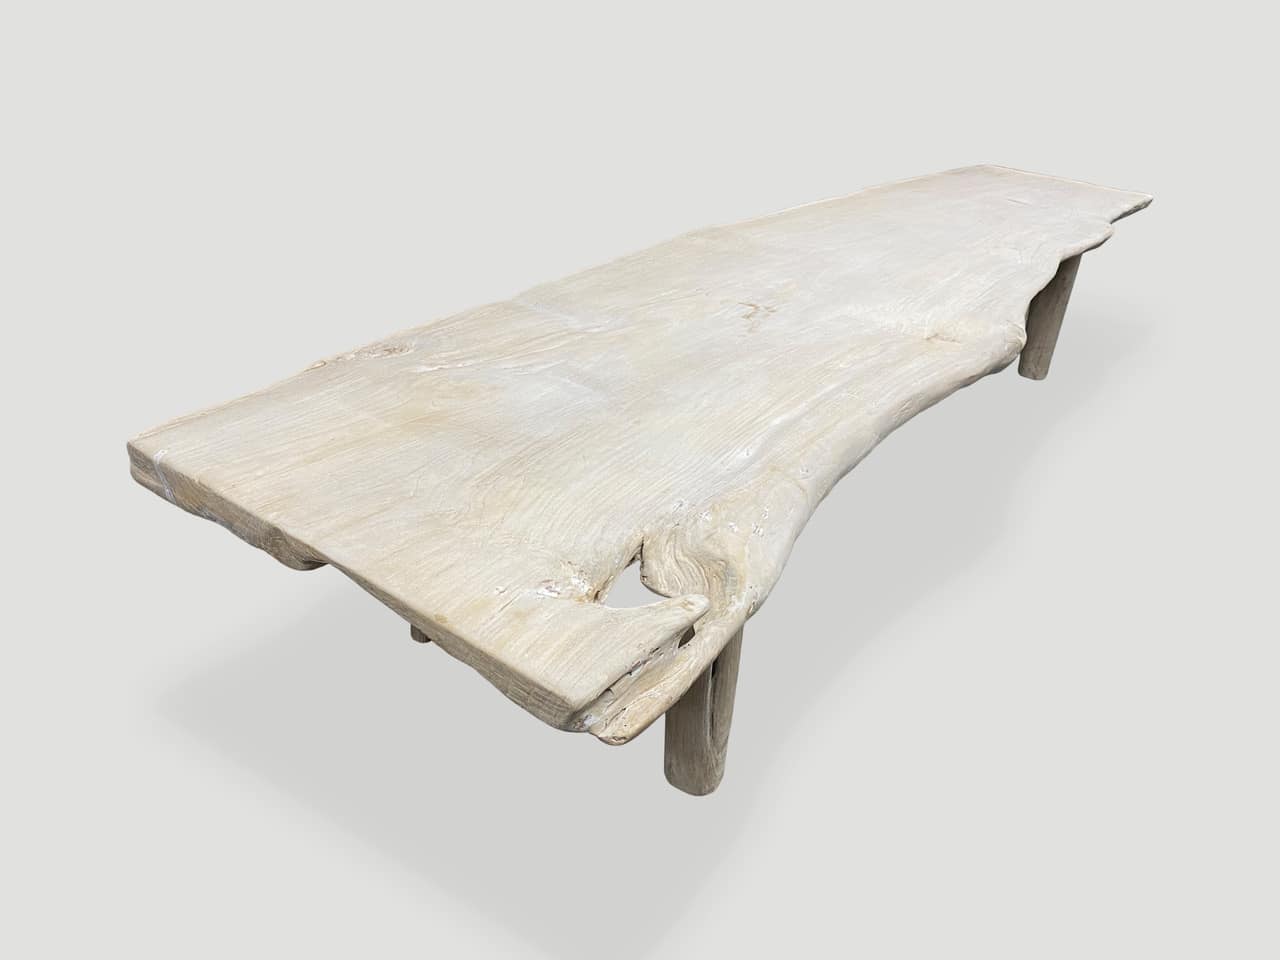 st barts teak wood table